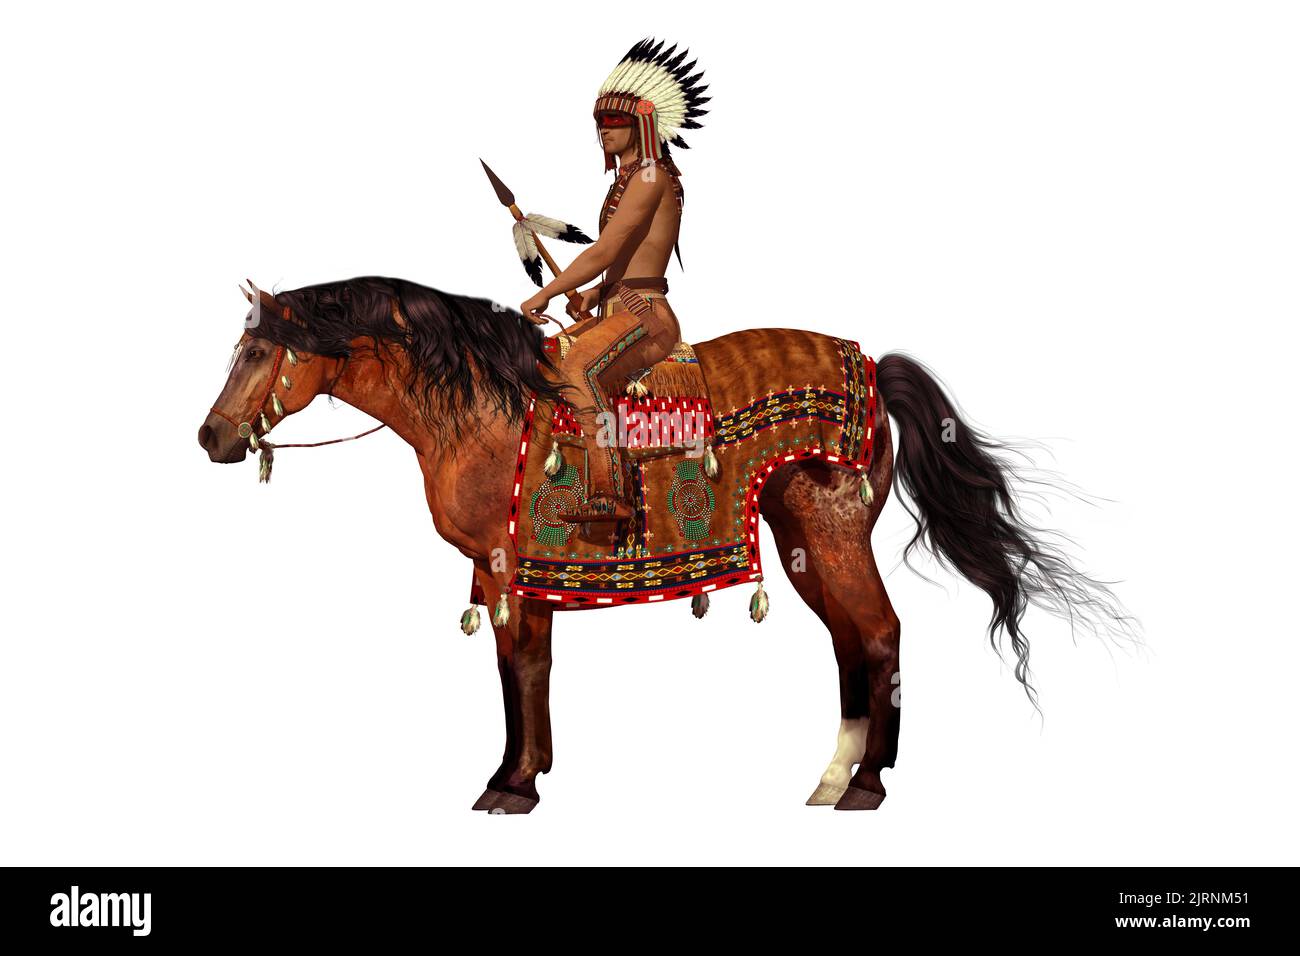 Fier aigle sur blanc - un Indien américain roule son cheval Appaloosa avec de la peinture de guerre sur son visage et une lance dans sa main. Banque D'Images